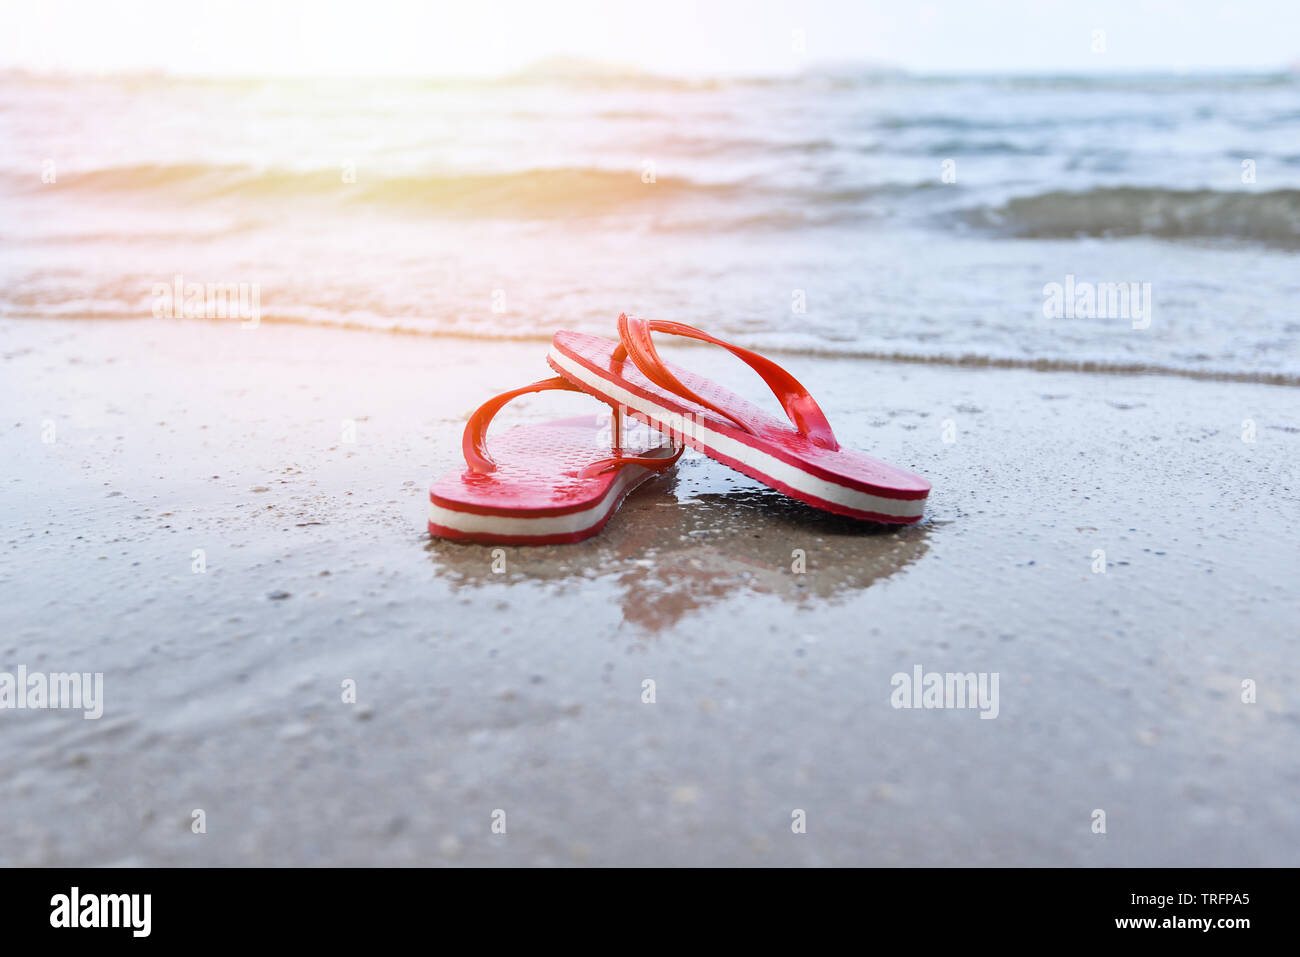 Rote flip flops am Strand mit Sandstrand Meer Ozean und Sonnenlicht  Hintergrund Stockfotografie - Alamy